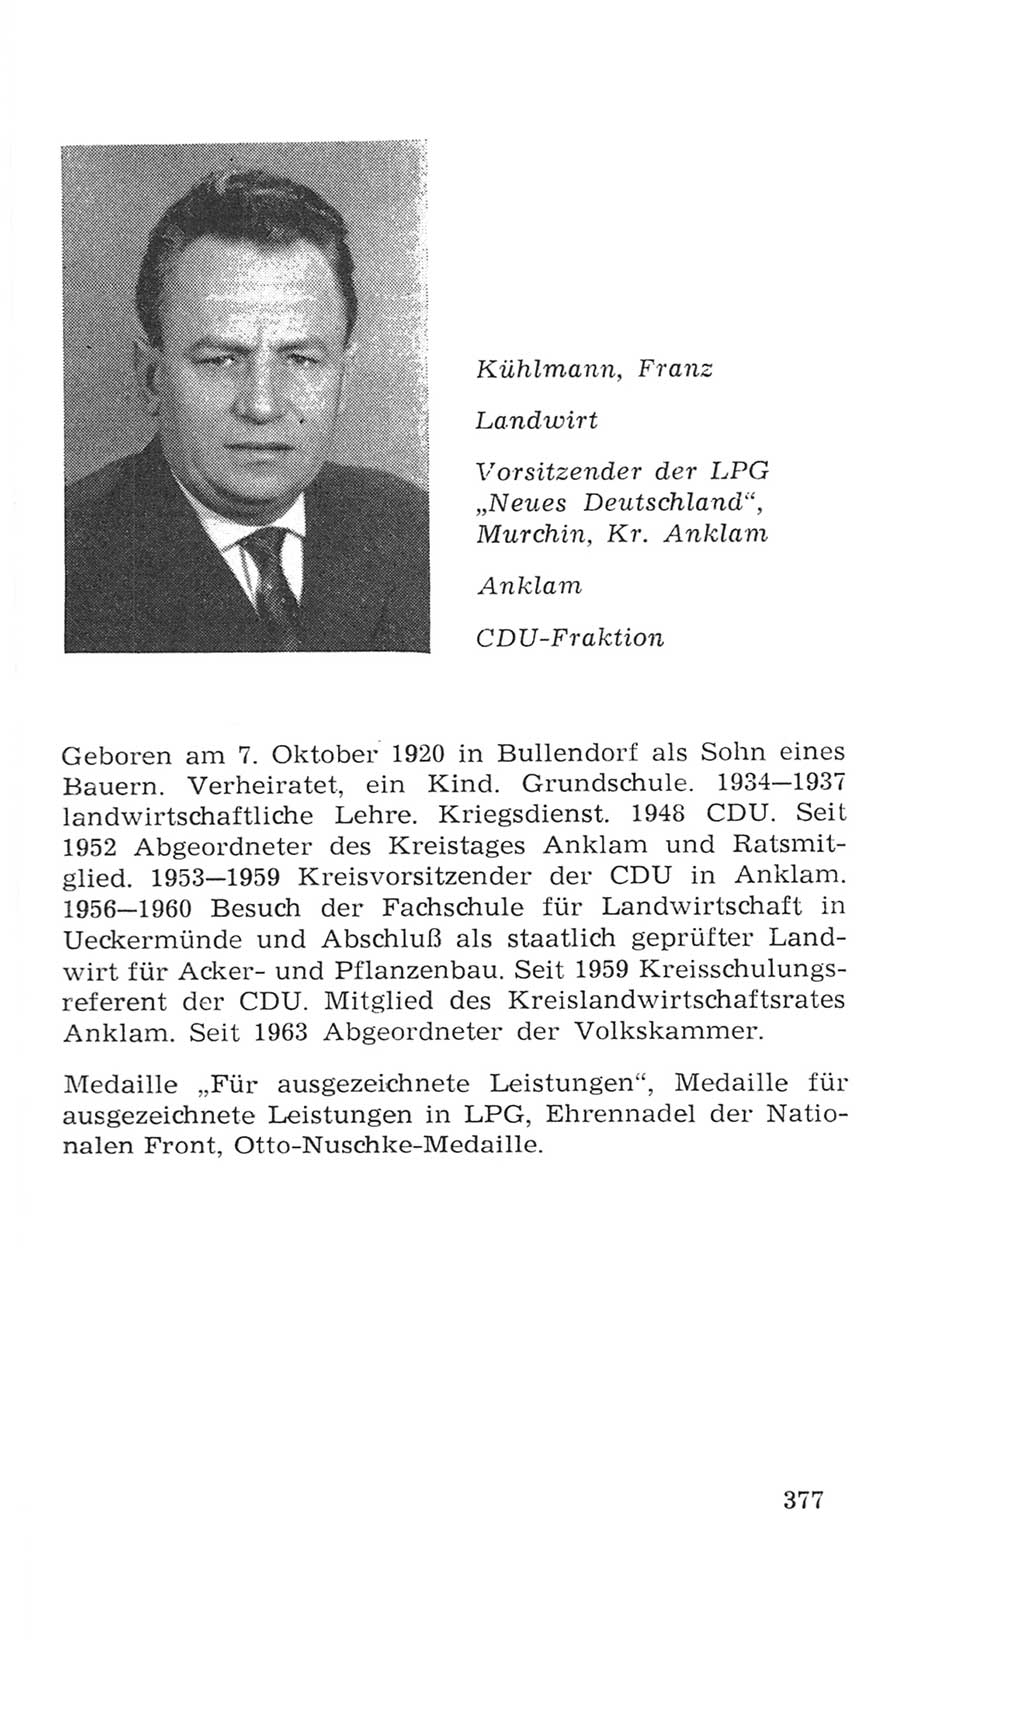 Volkskammer (VK) der Deutschen Demokratischen Republik (DDR), 4. Wahlperiode 1963-1967, Seite 377 (VK. DDR 4. WP. 1963-1967, S. 377)